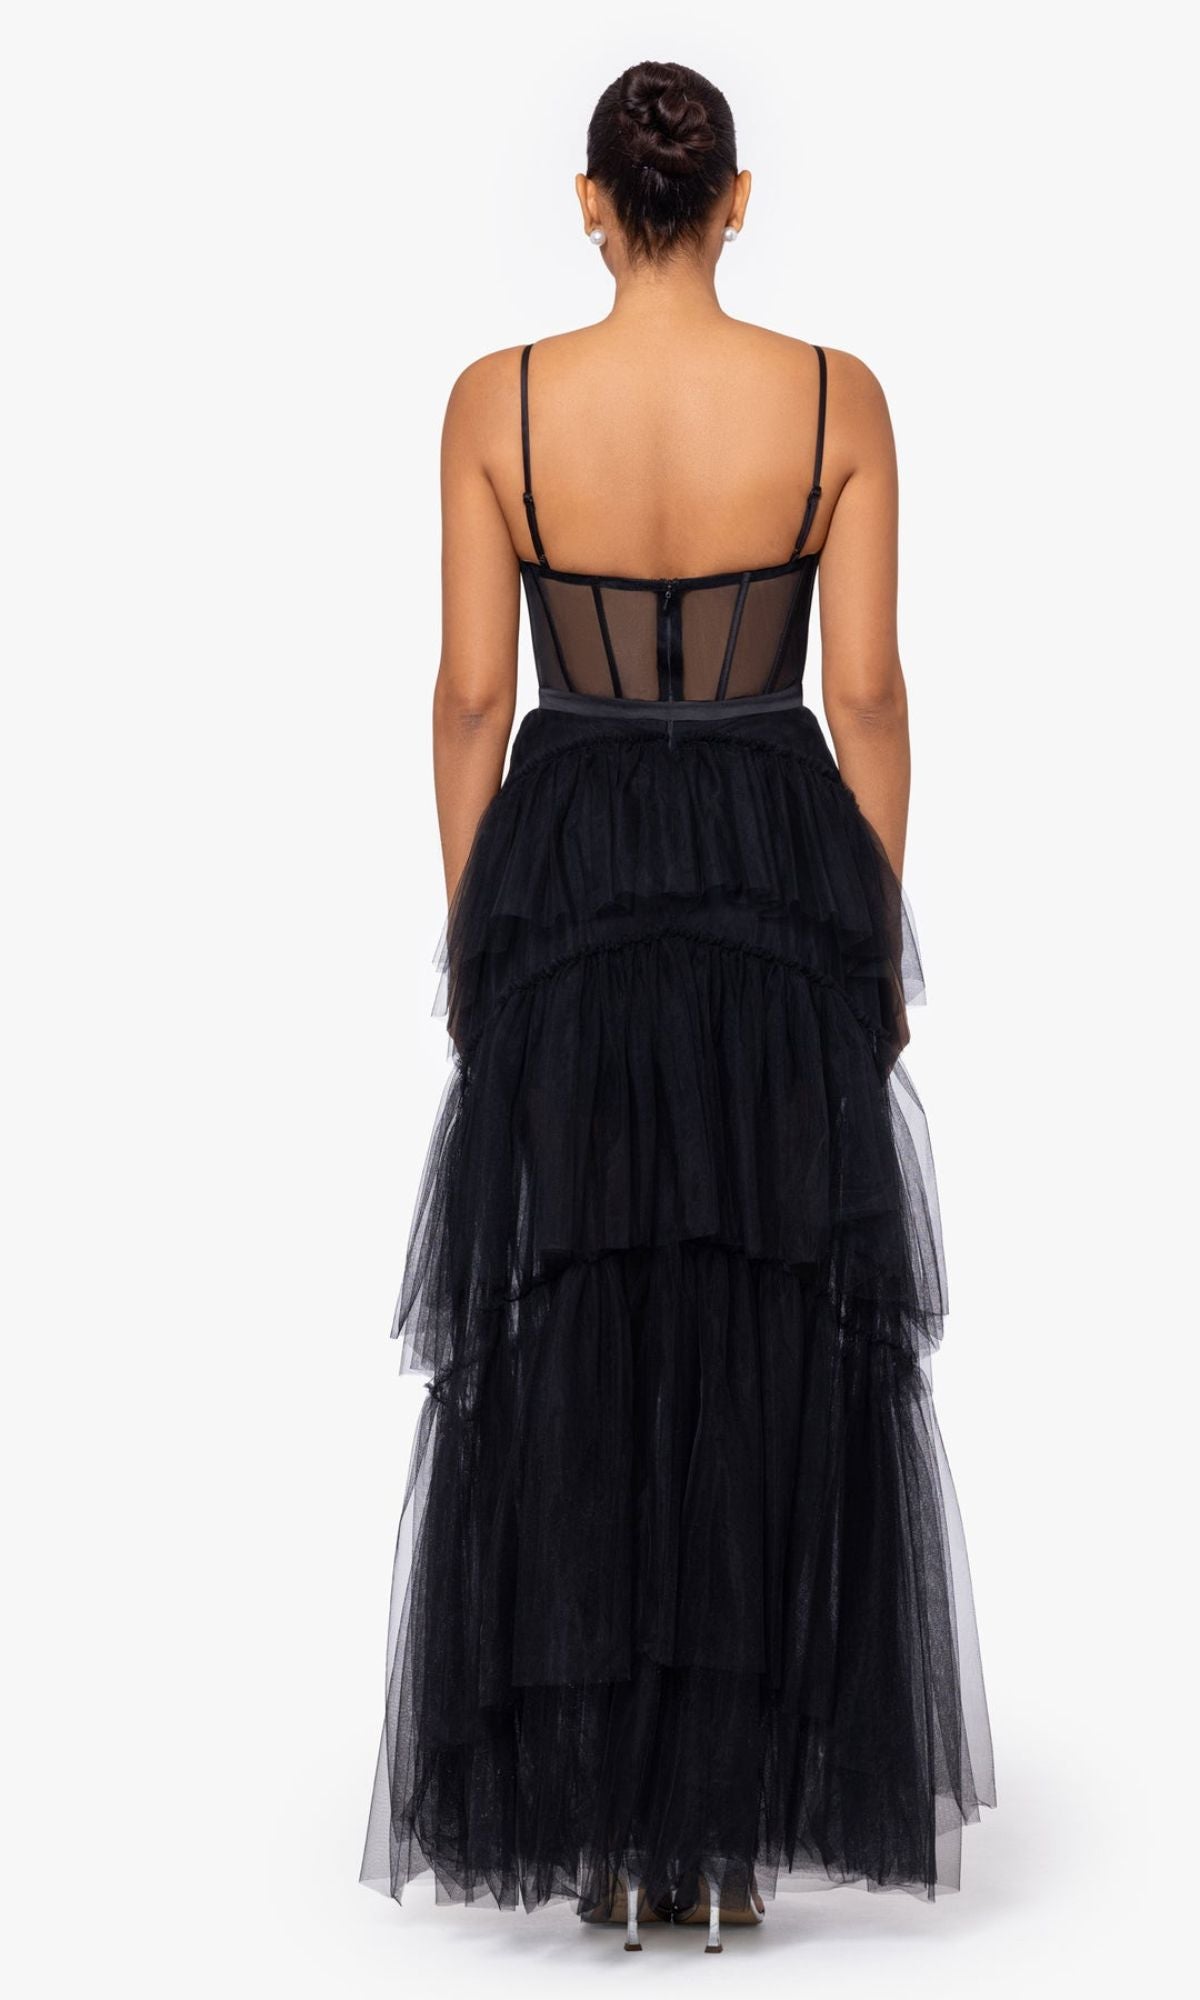 Sheer-Waist Long Black Tiered Prom Dress A26249